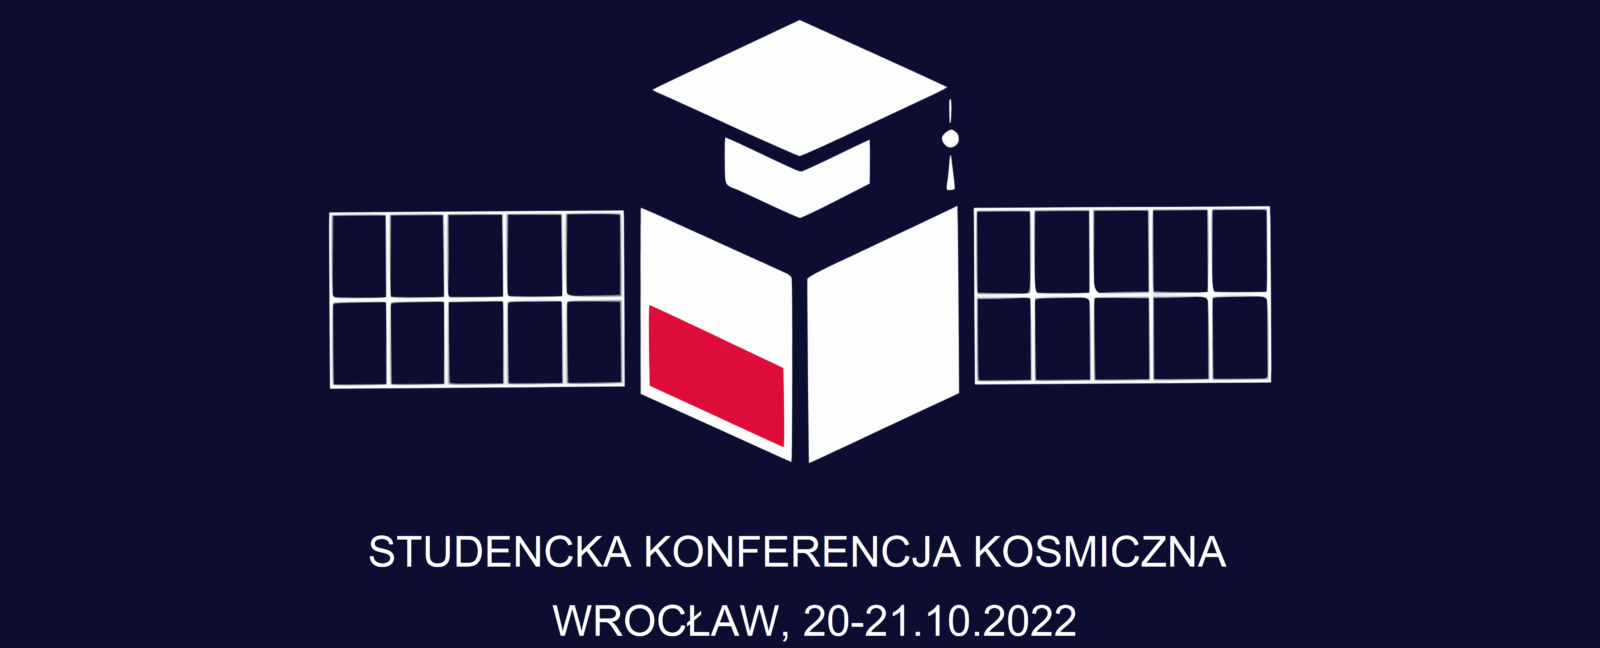 II Studencka Konferencja Kosmiczna – SKK Wrocław 2022